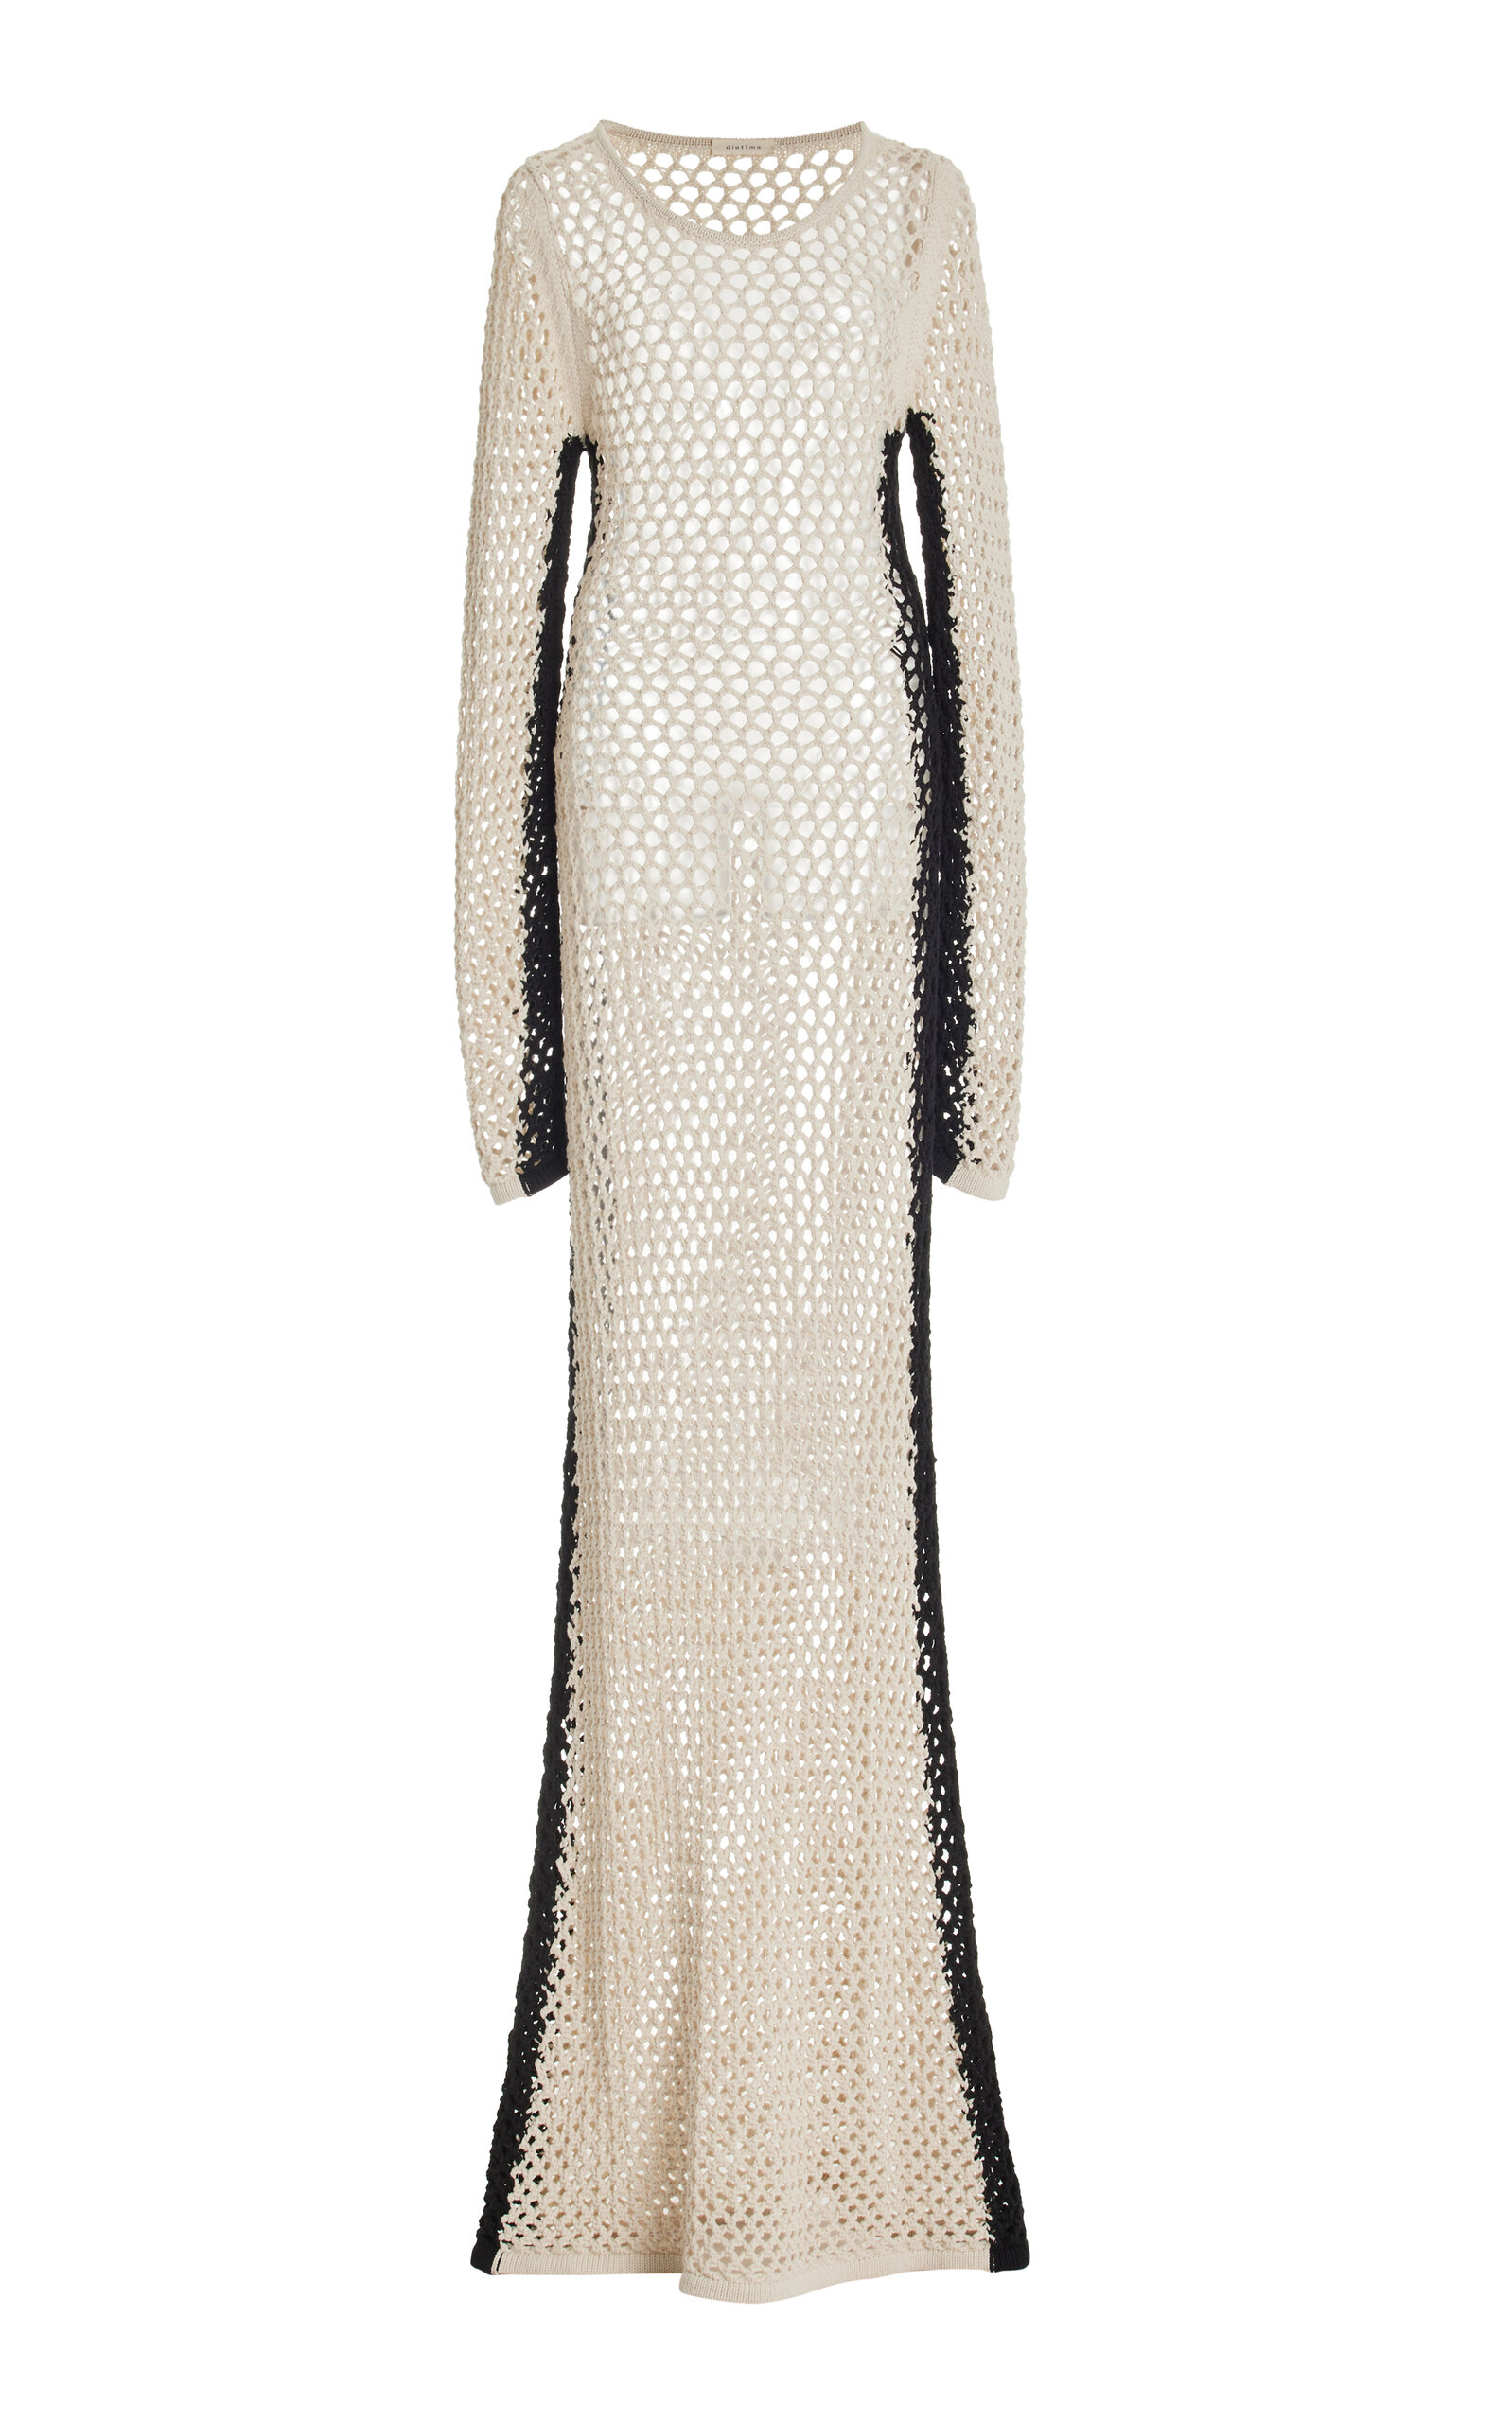 Mount Crocheted Cotton-Blend Maxi Dress